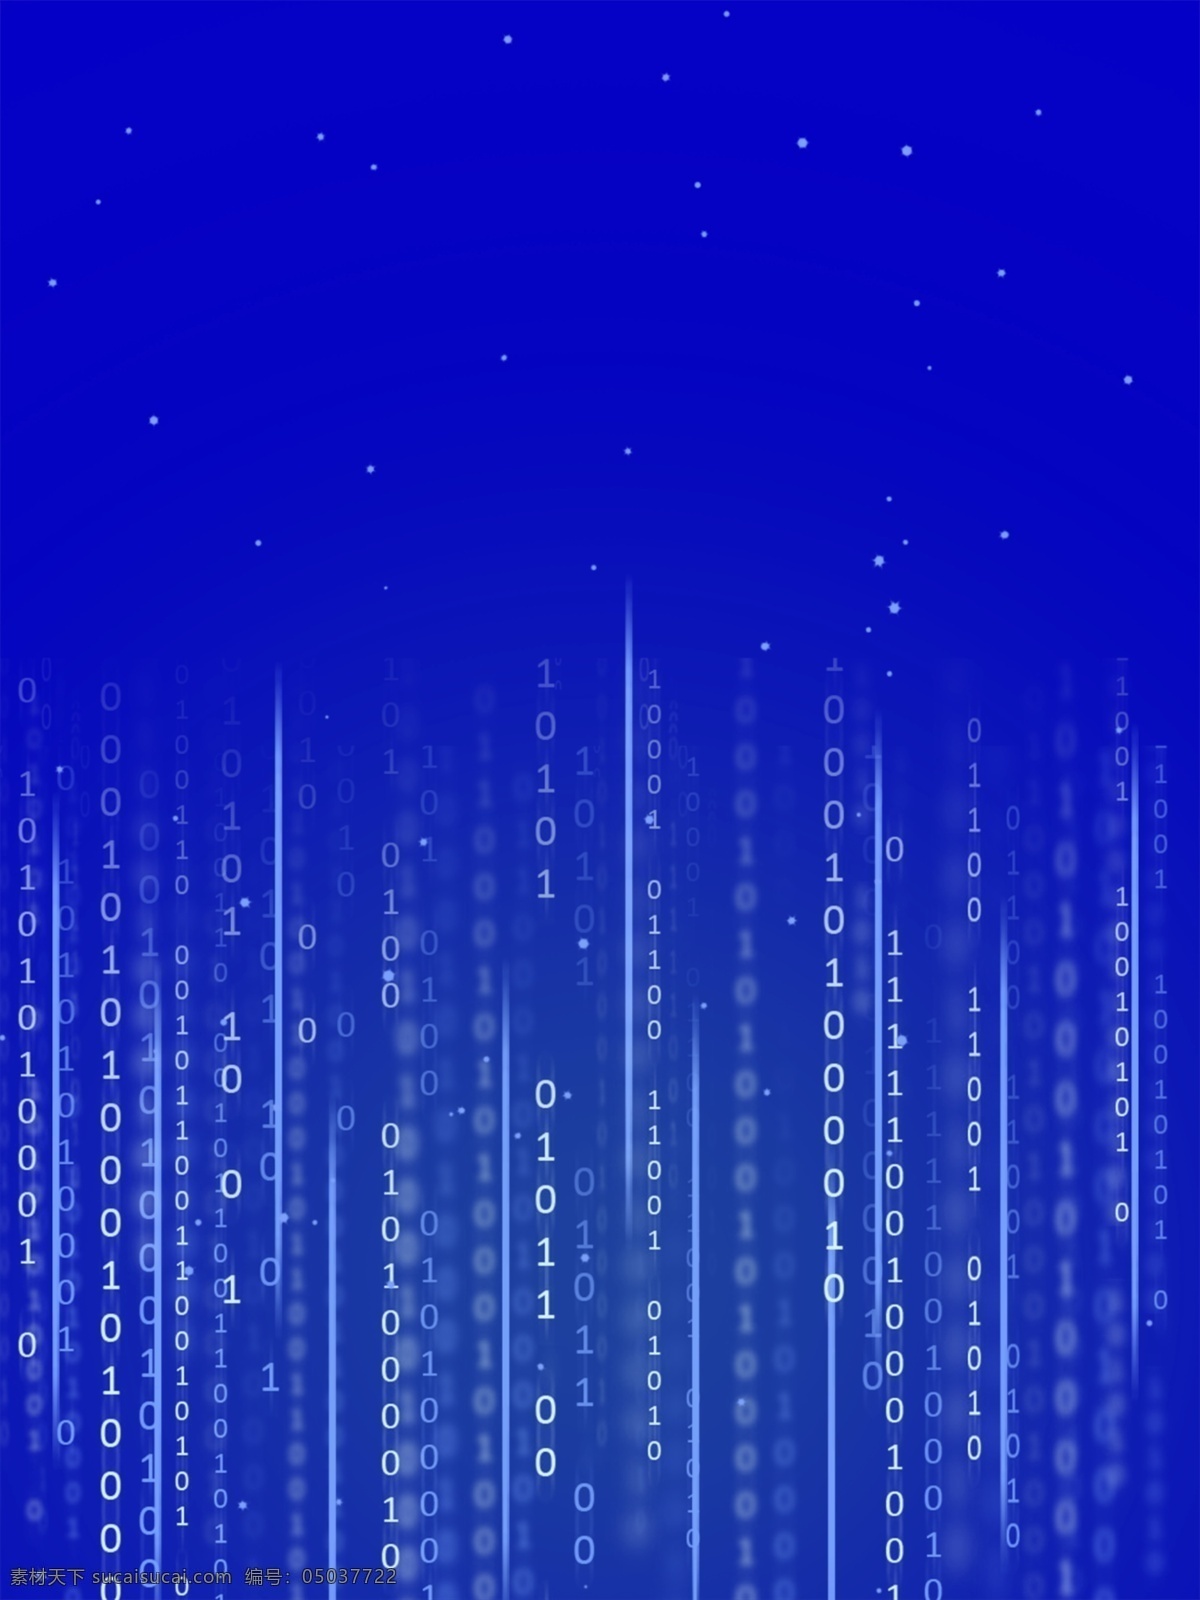 蓝色 粒子 大 数据 科技 背景图片 蓝色粒子 大数据 蓝色科技背景 蓝色大数据 科技背景 大数据背景 底纹背景 底纹边框 背景底纹